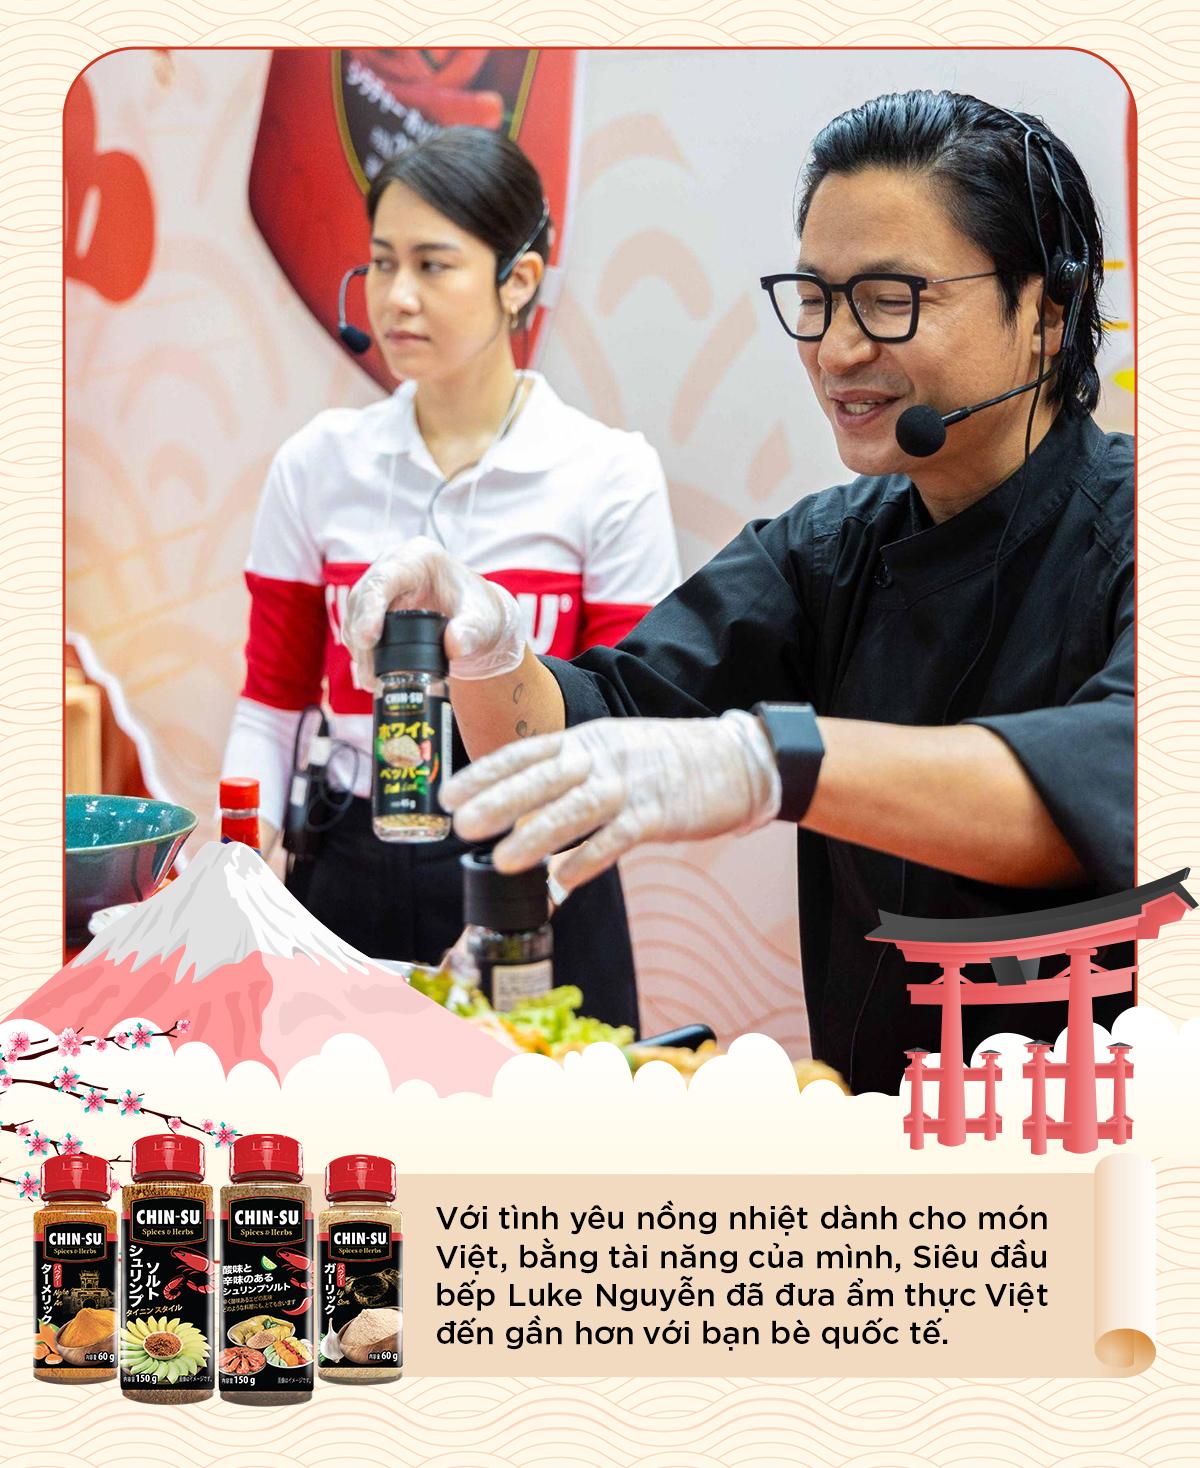 Bí quyết nêm nếm tròn vị của “phù thủy ẩm thực” Luke Nguyễn thu hút thực khách đến với món Việt - Ảnh 1.